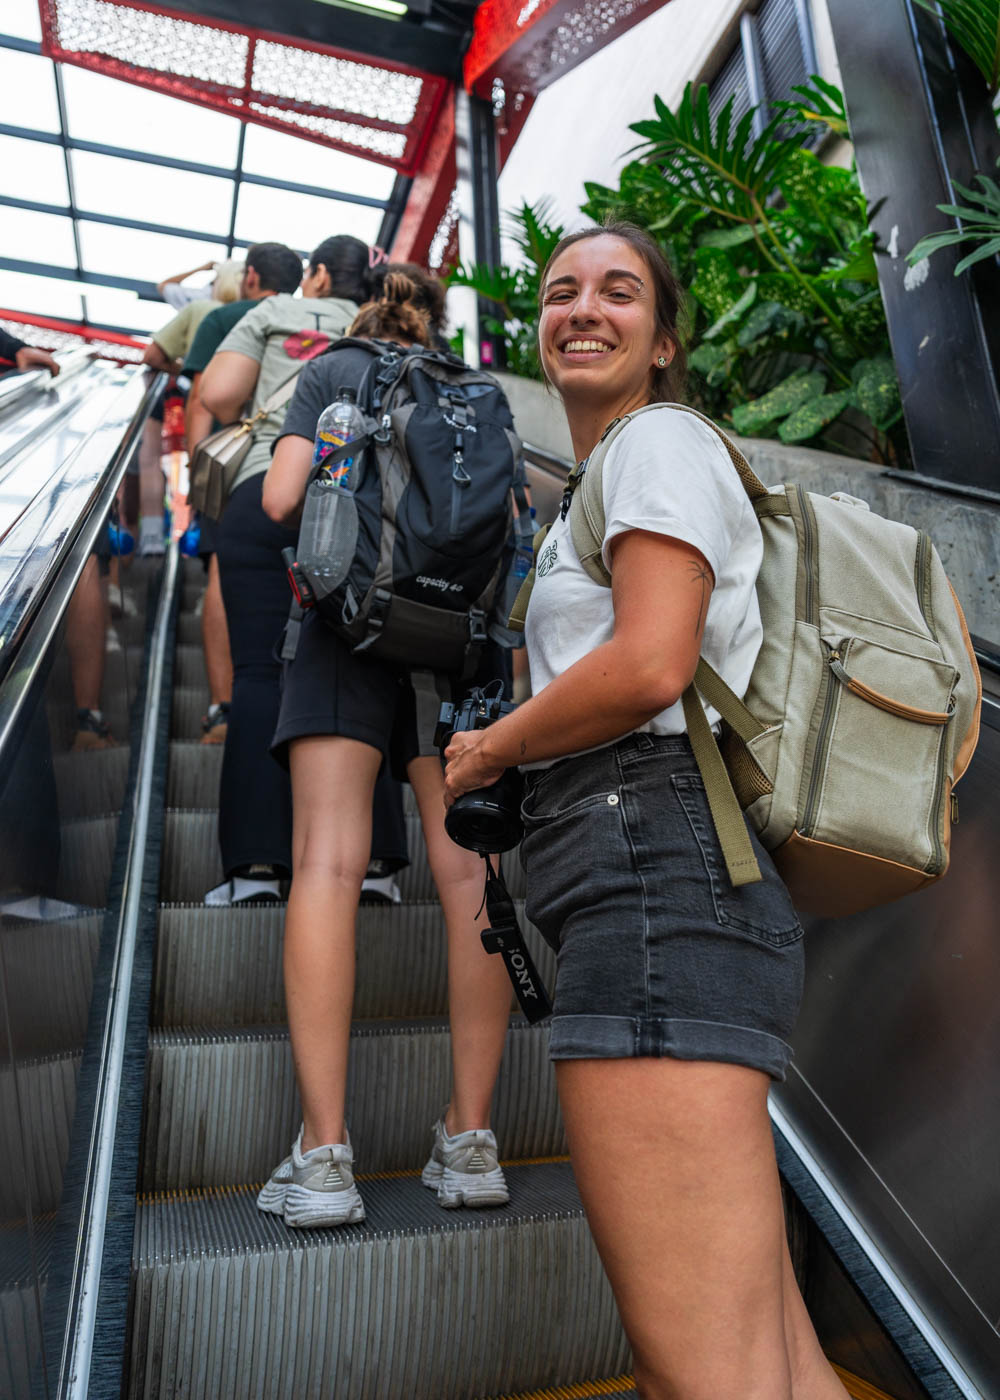 Sara smiling at the camera while riding the escalator up Comuna 13.